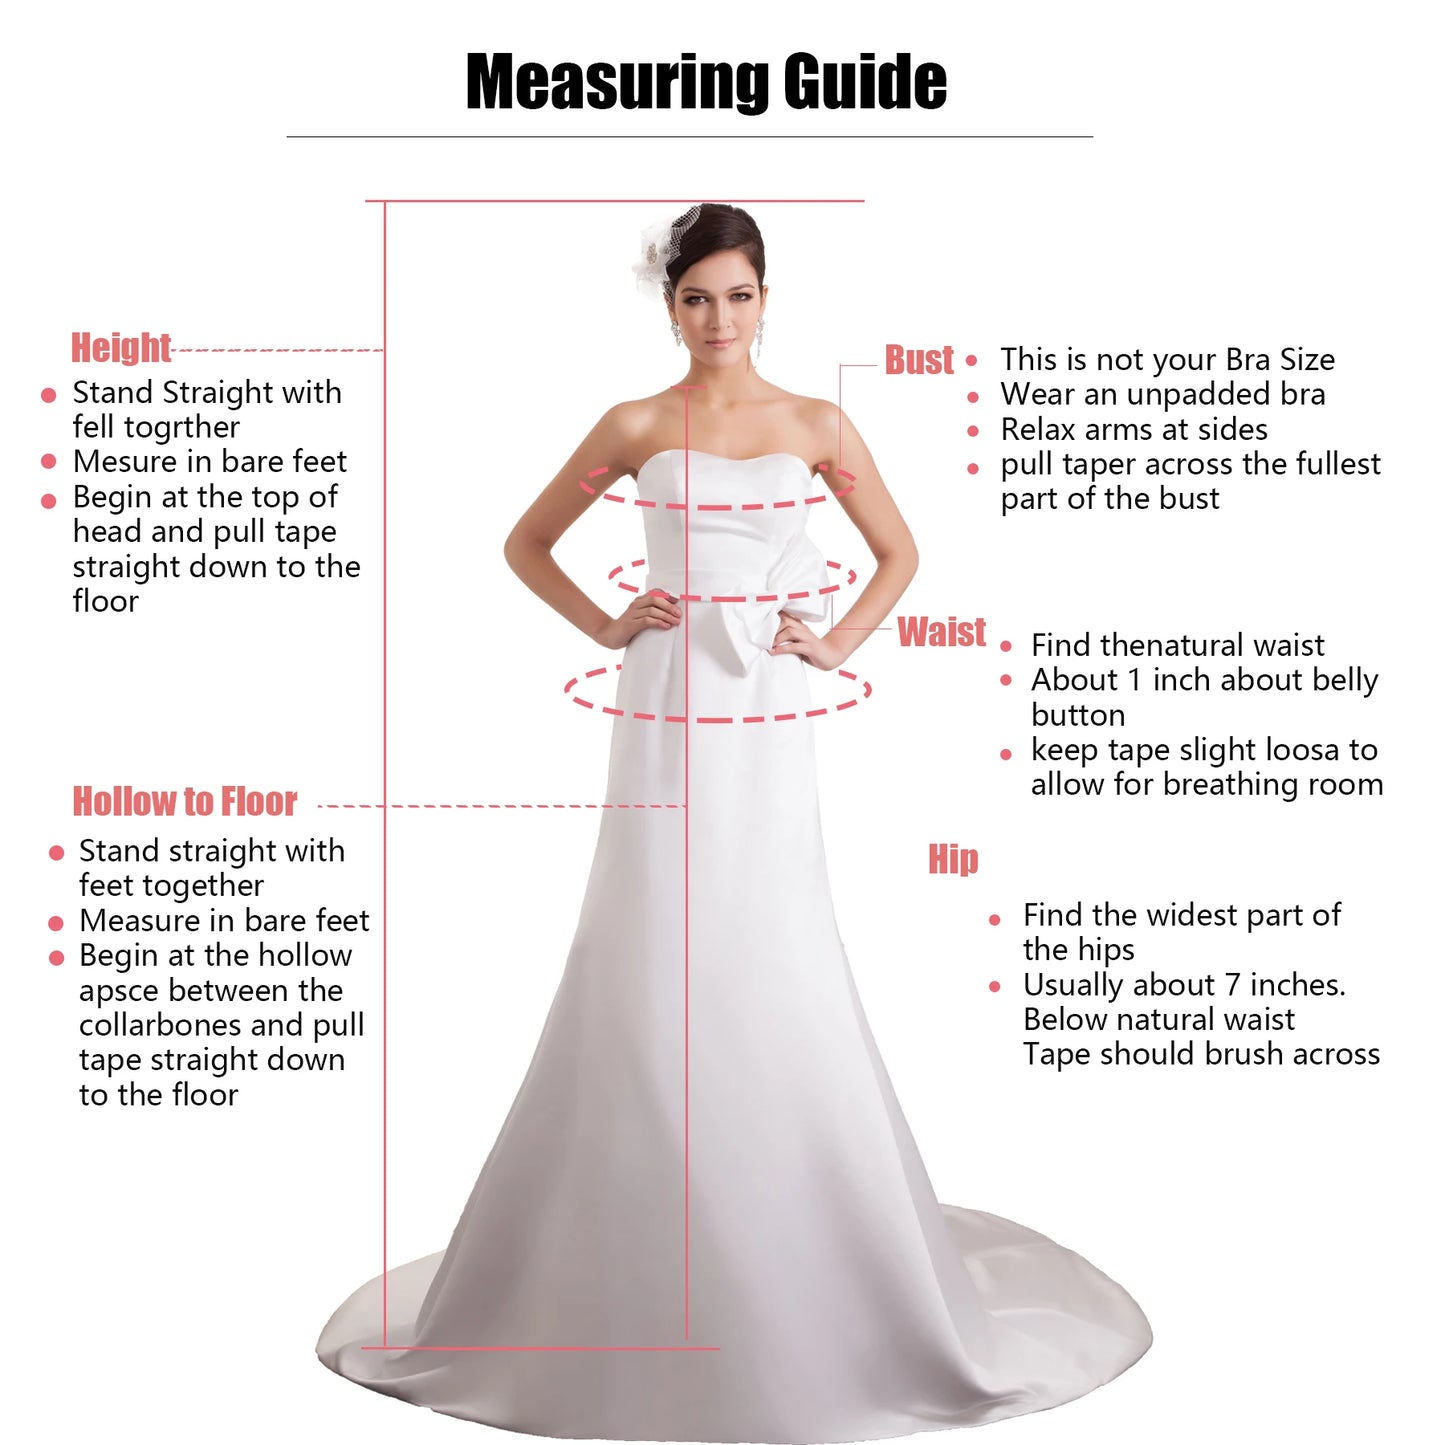 Beaded Beauty Ball gown Wedding Dress